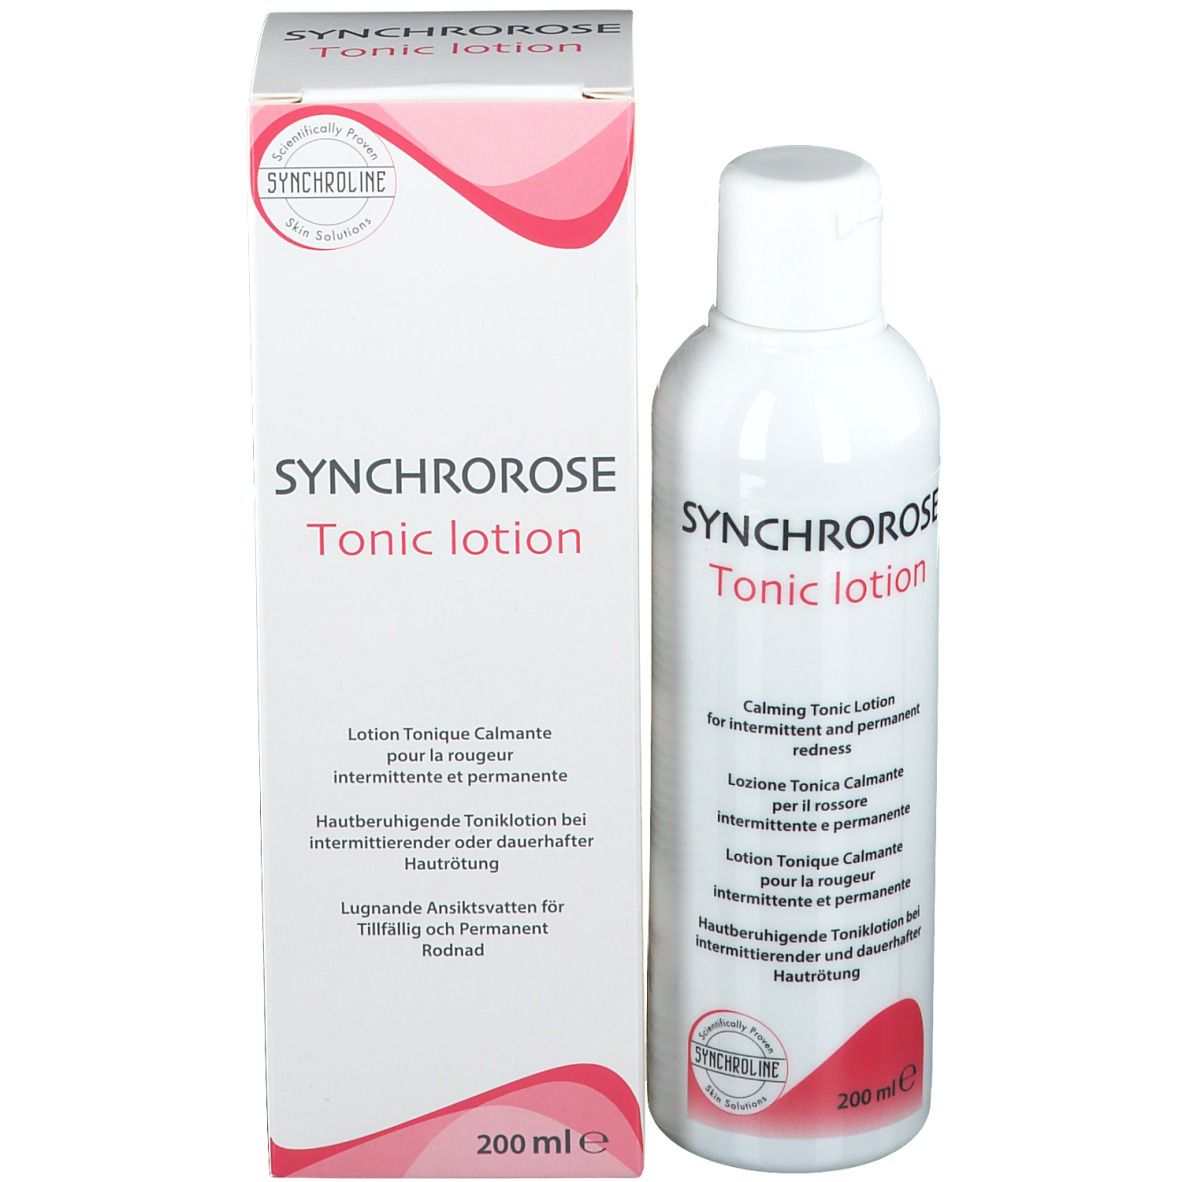 SYNCHROLINE® SYNCHROROSE tonic lotion